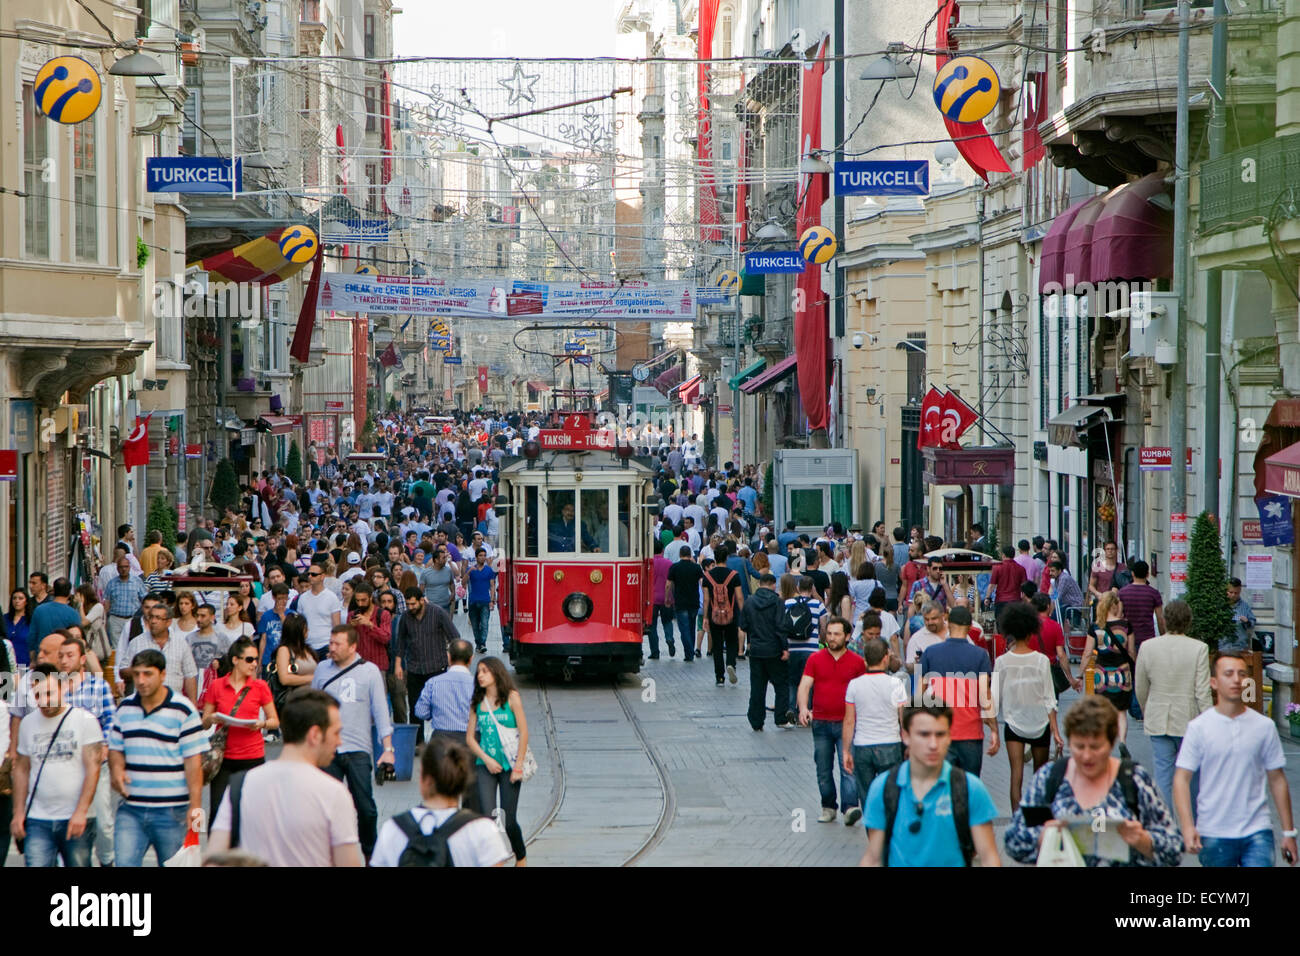 Historische Straßenbahn in die Istiklal Caddesi, belebten Einkaufsstraße in der Nähe von Taksim-Platz in der Stadt Istanbul, Türkei Stockfoto